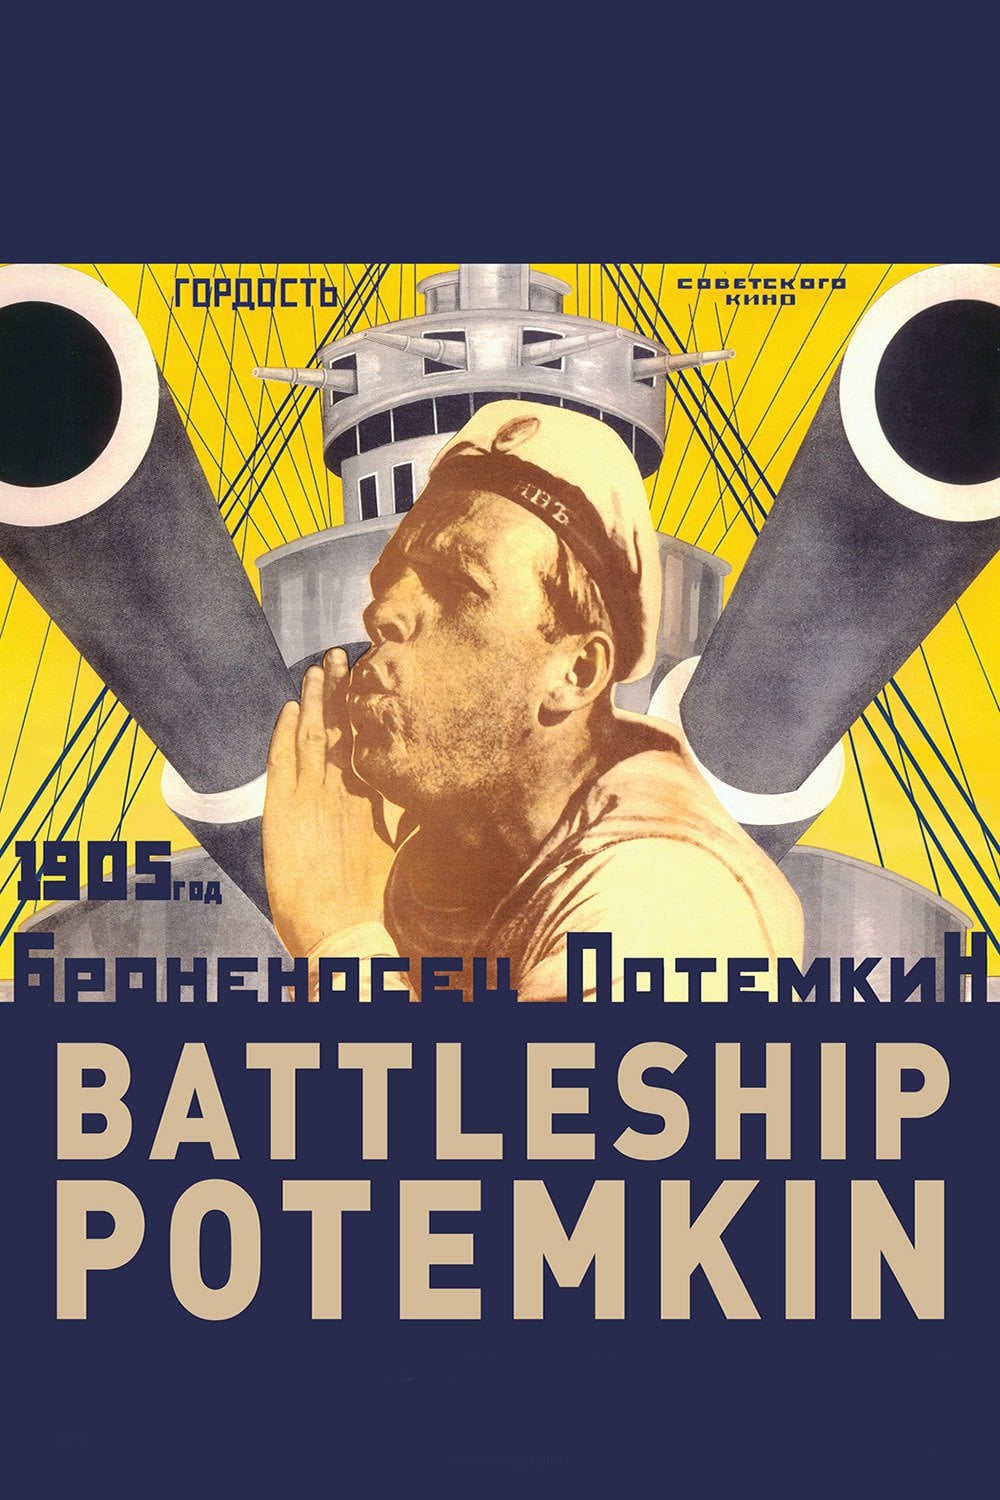 O Encouraçado Potemkin (1925)